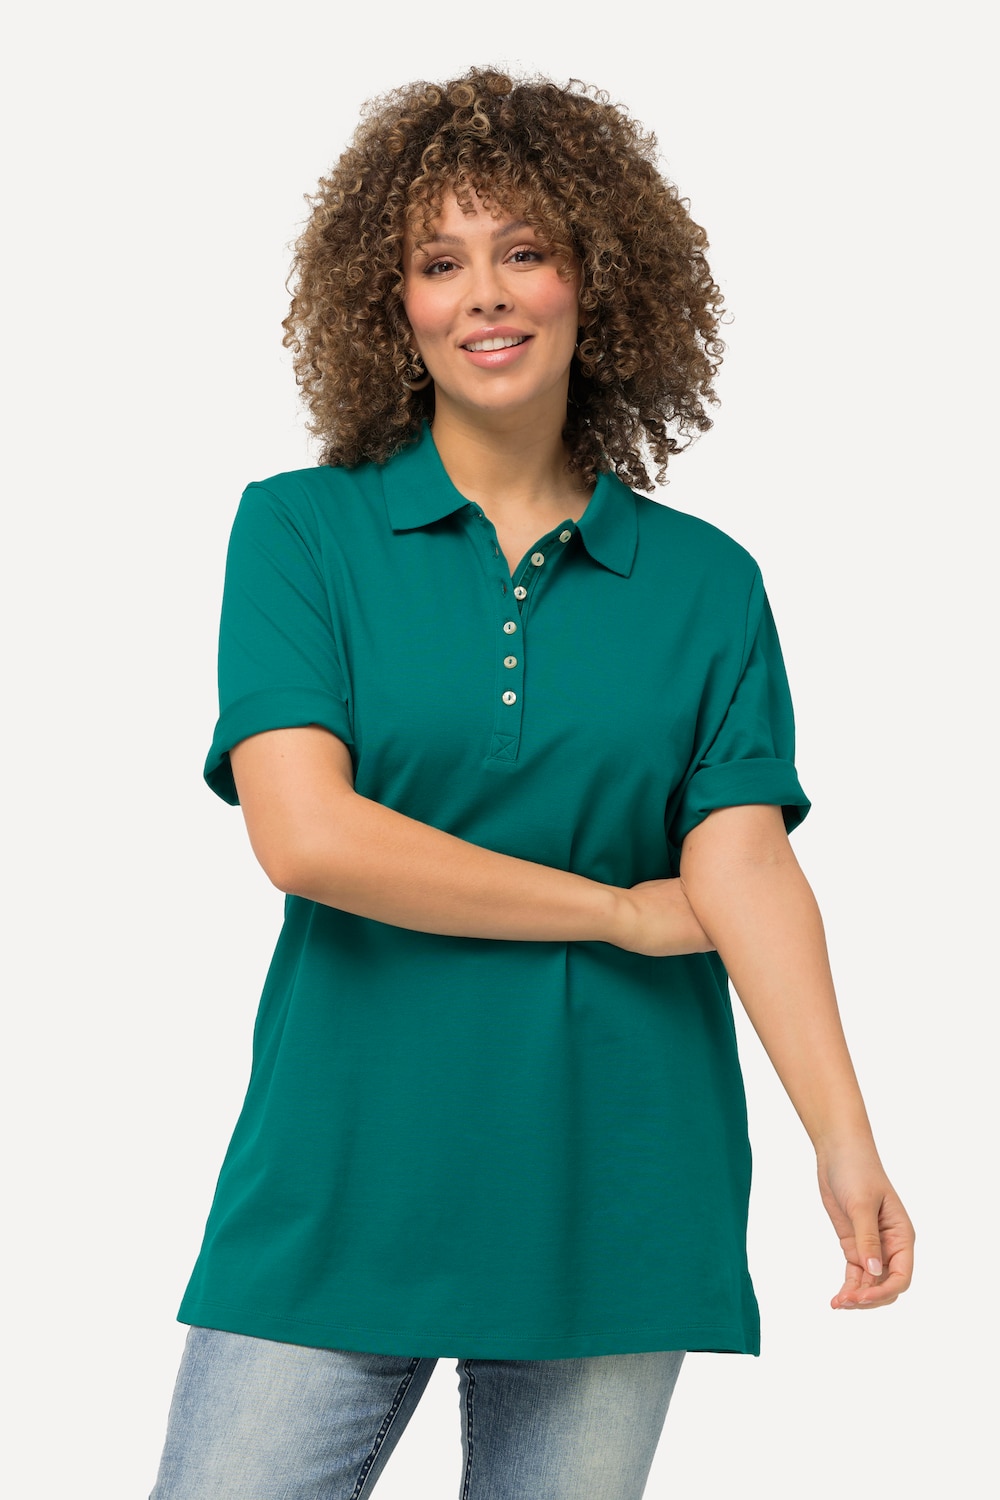 Große Größen Poloshirt, Damen, grün, Größe: 54/56, Baumwolle, Ulla Popken von Ulla Popken